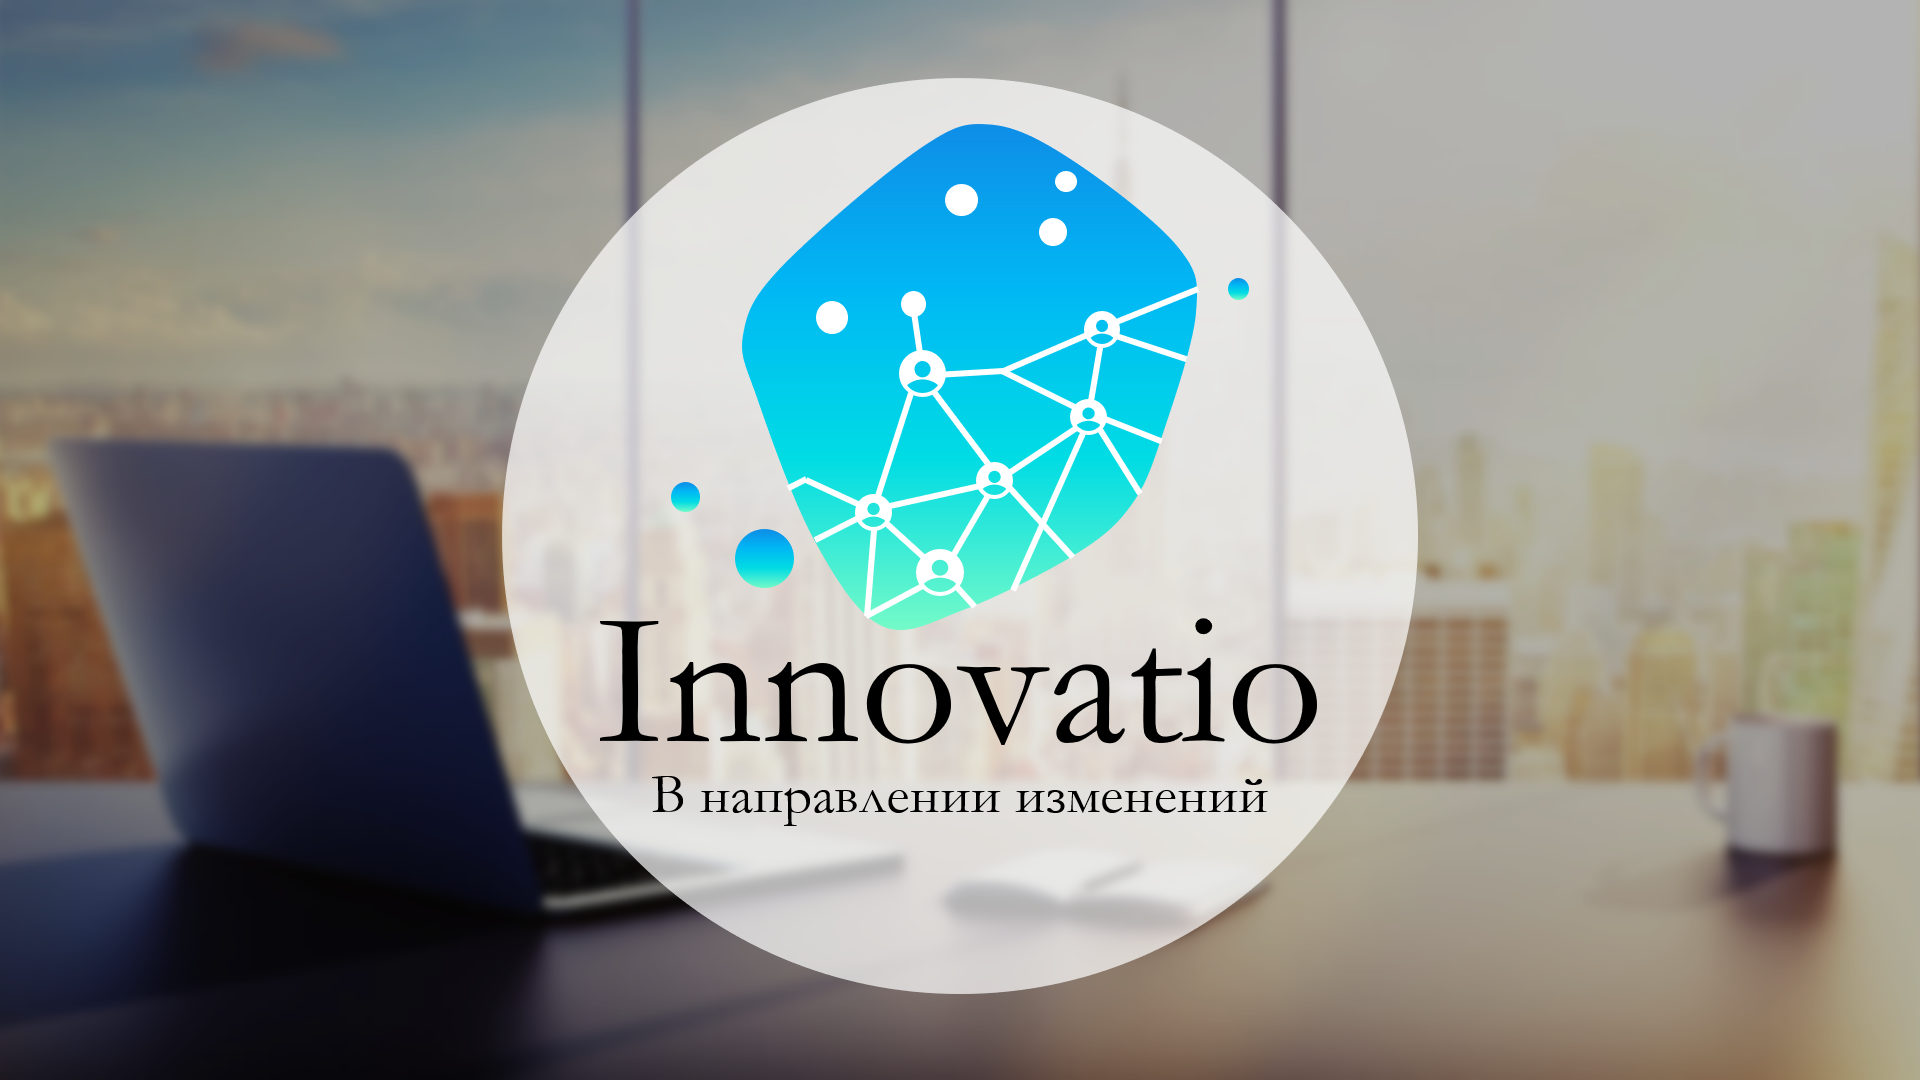 Цифровая практико-ориентированная платформа «Innovatio_1.0» для формирования инженерных и цифровых компетенций у школьников